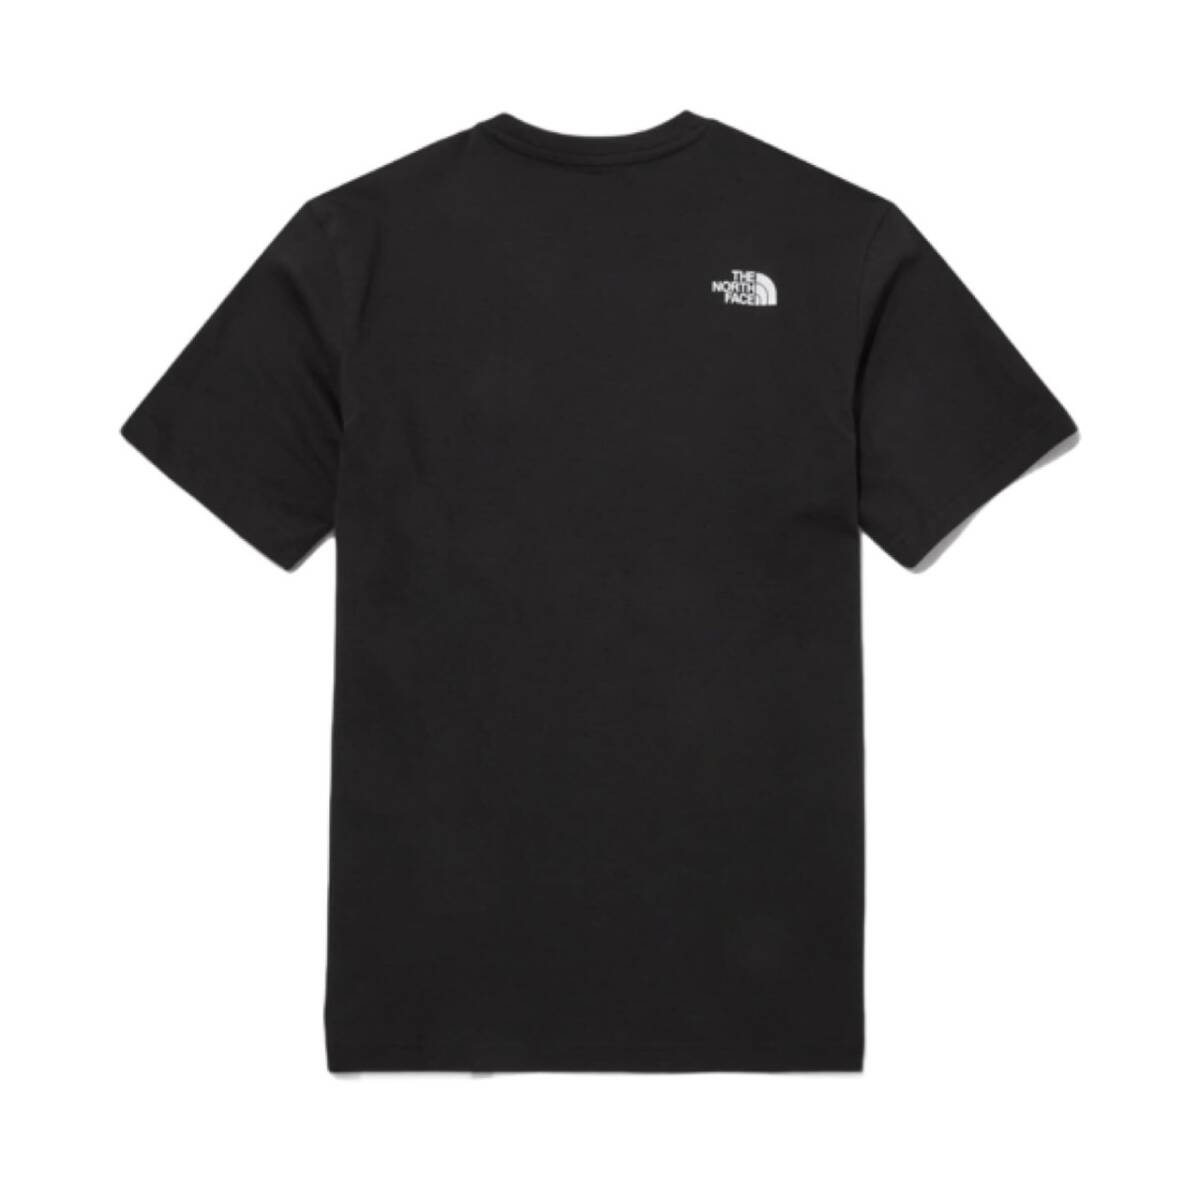 ザ ノースフェイス 半袖 Tシャツ NT7U ブラック XSサイズ コットン素材 クルーネック シンプルロゴ THE NORTH FACE COTTON S/S TEE 新品